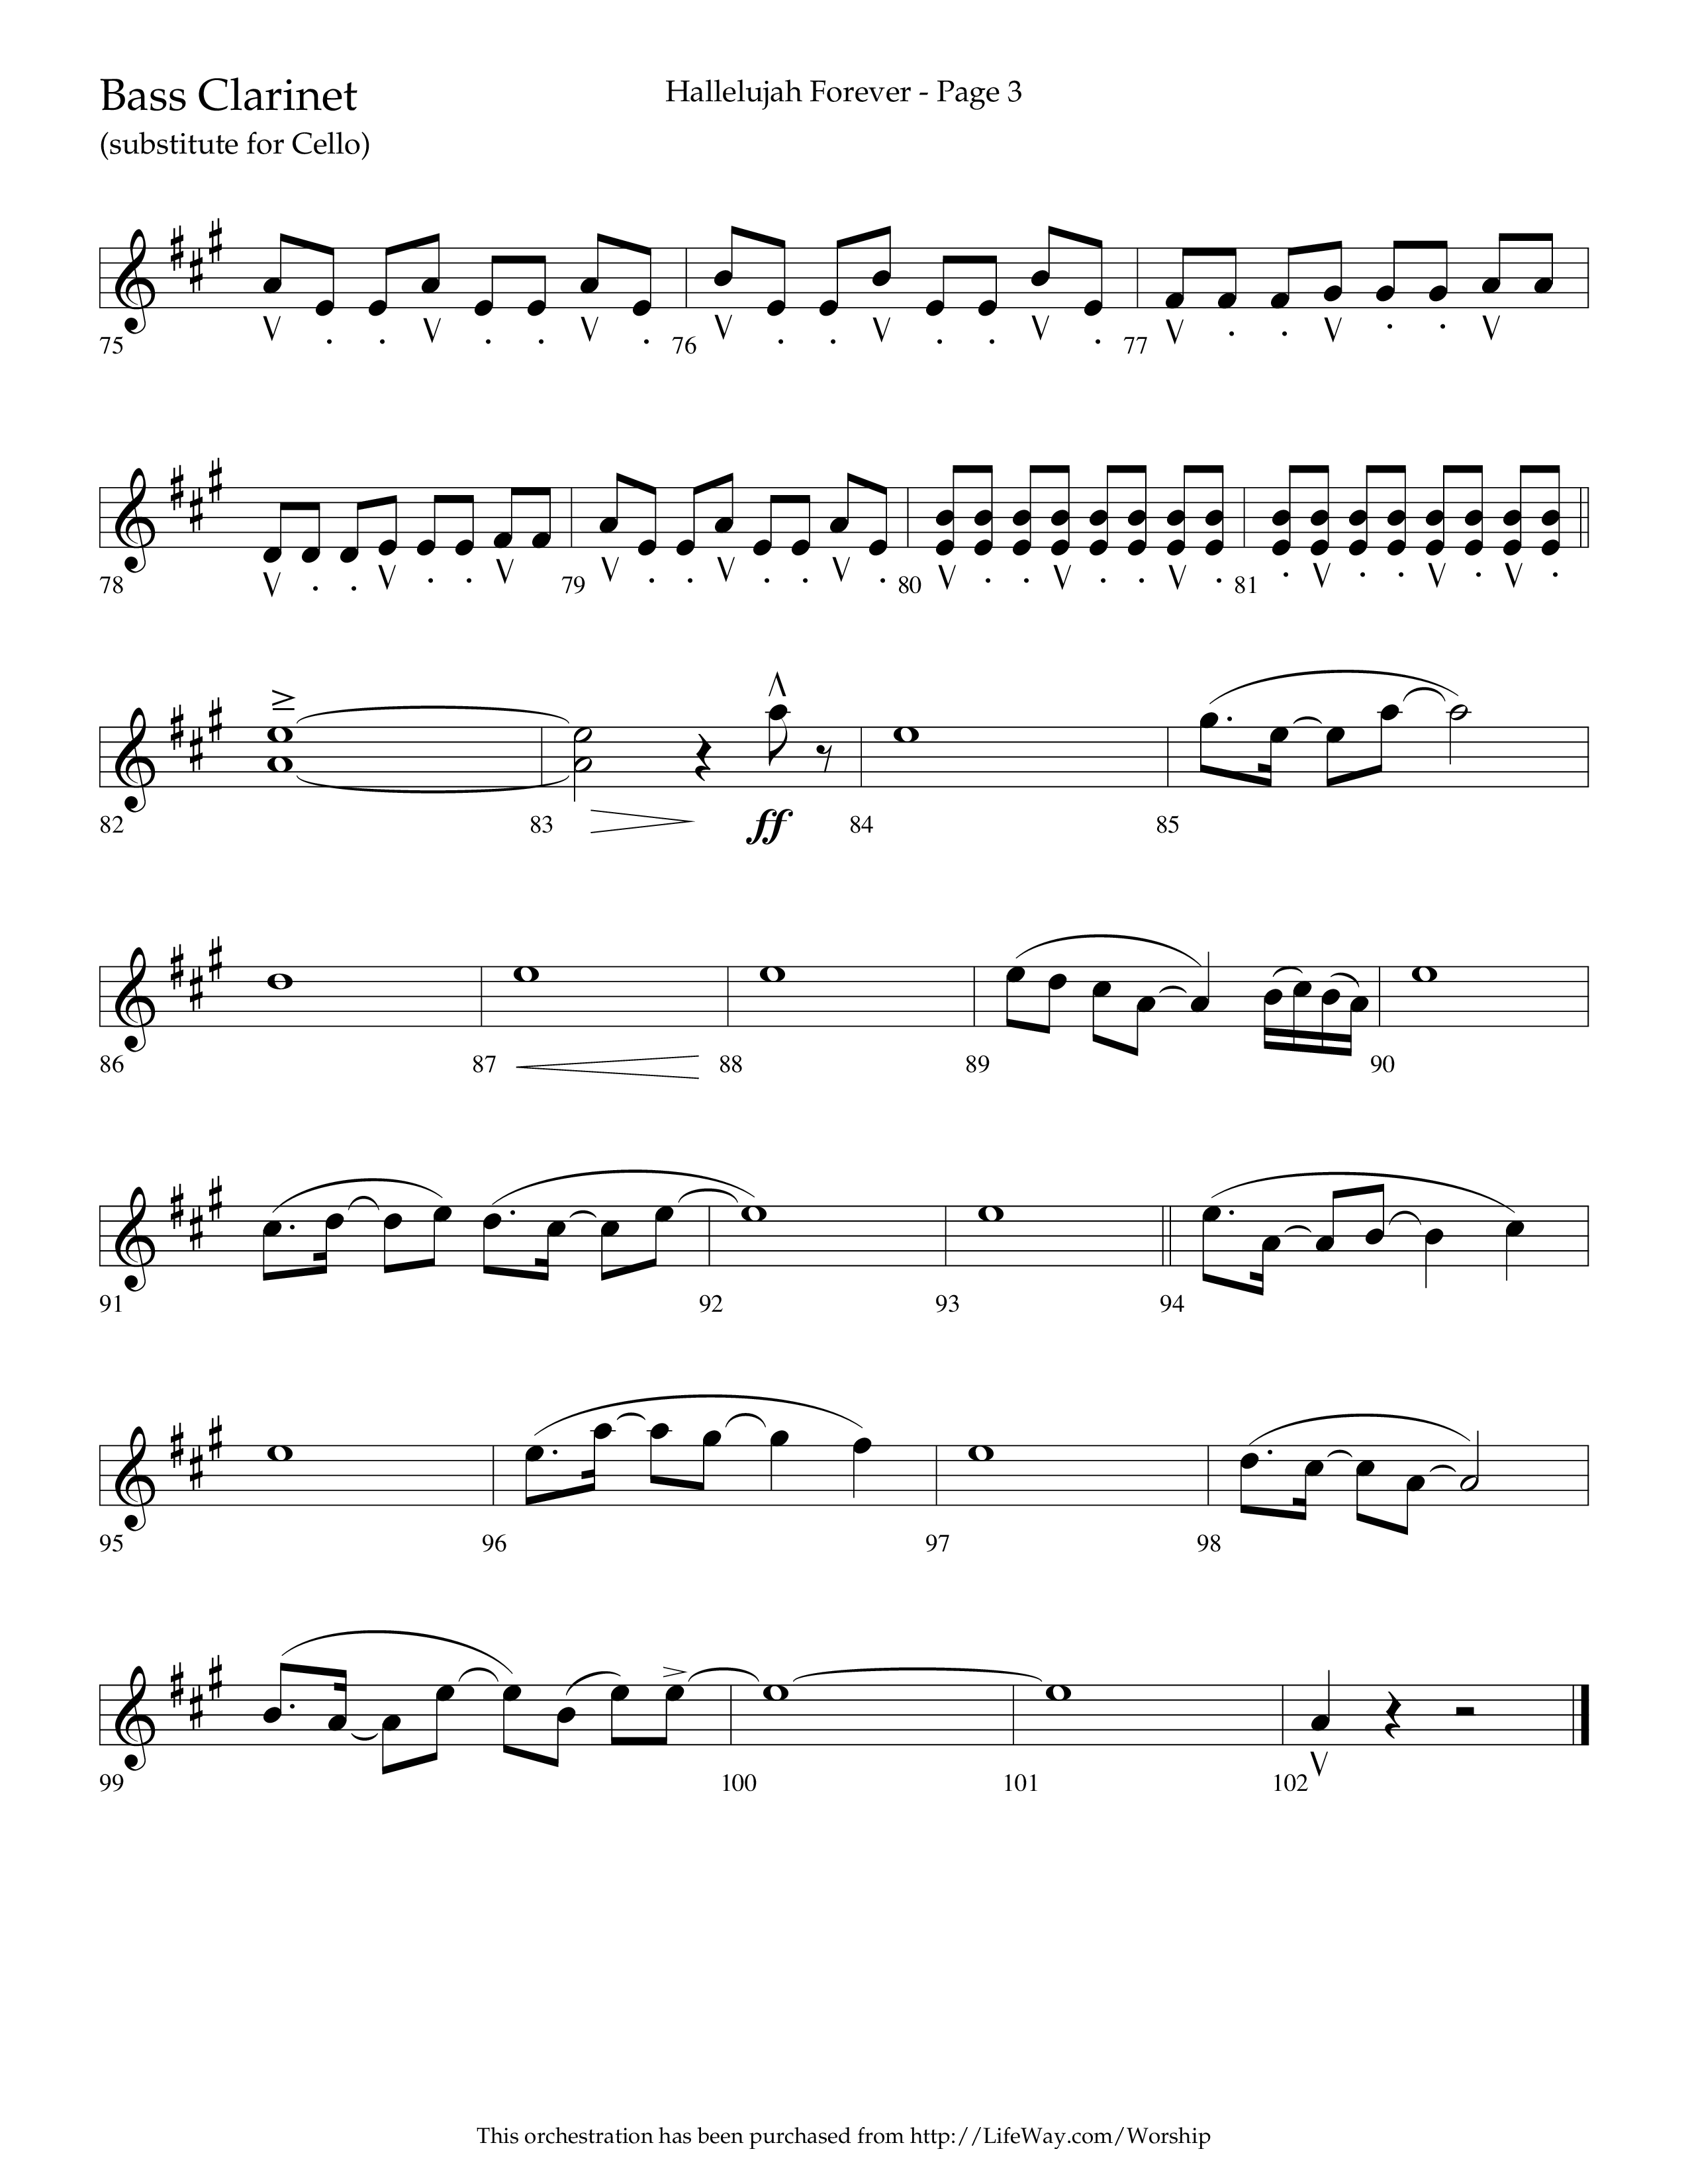 Hallelujah Forever (Choral Anthem SATB) Bass Clarinet (Lifeway Choral / Arr. Cliff Duren)